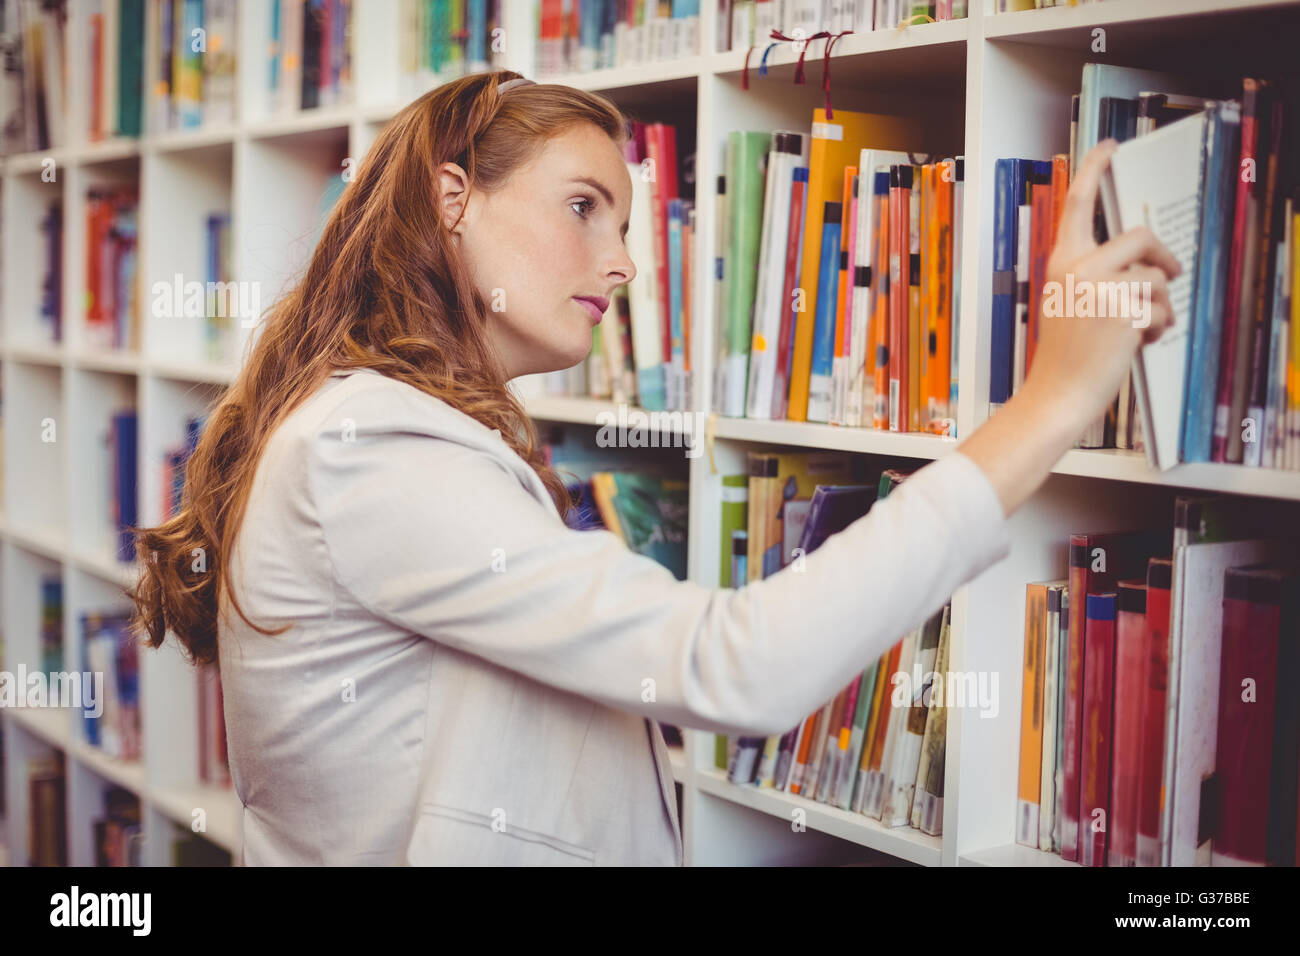 Schullehrer Bücherregal in der Bibliothek ein Buch auswählen Stockfoto